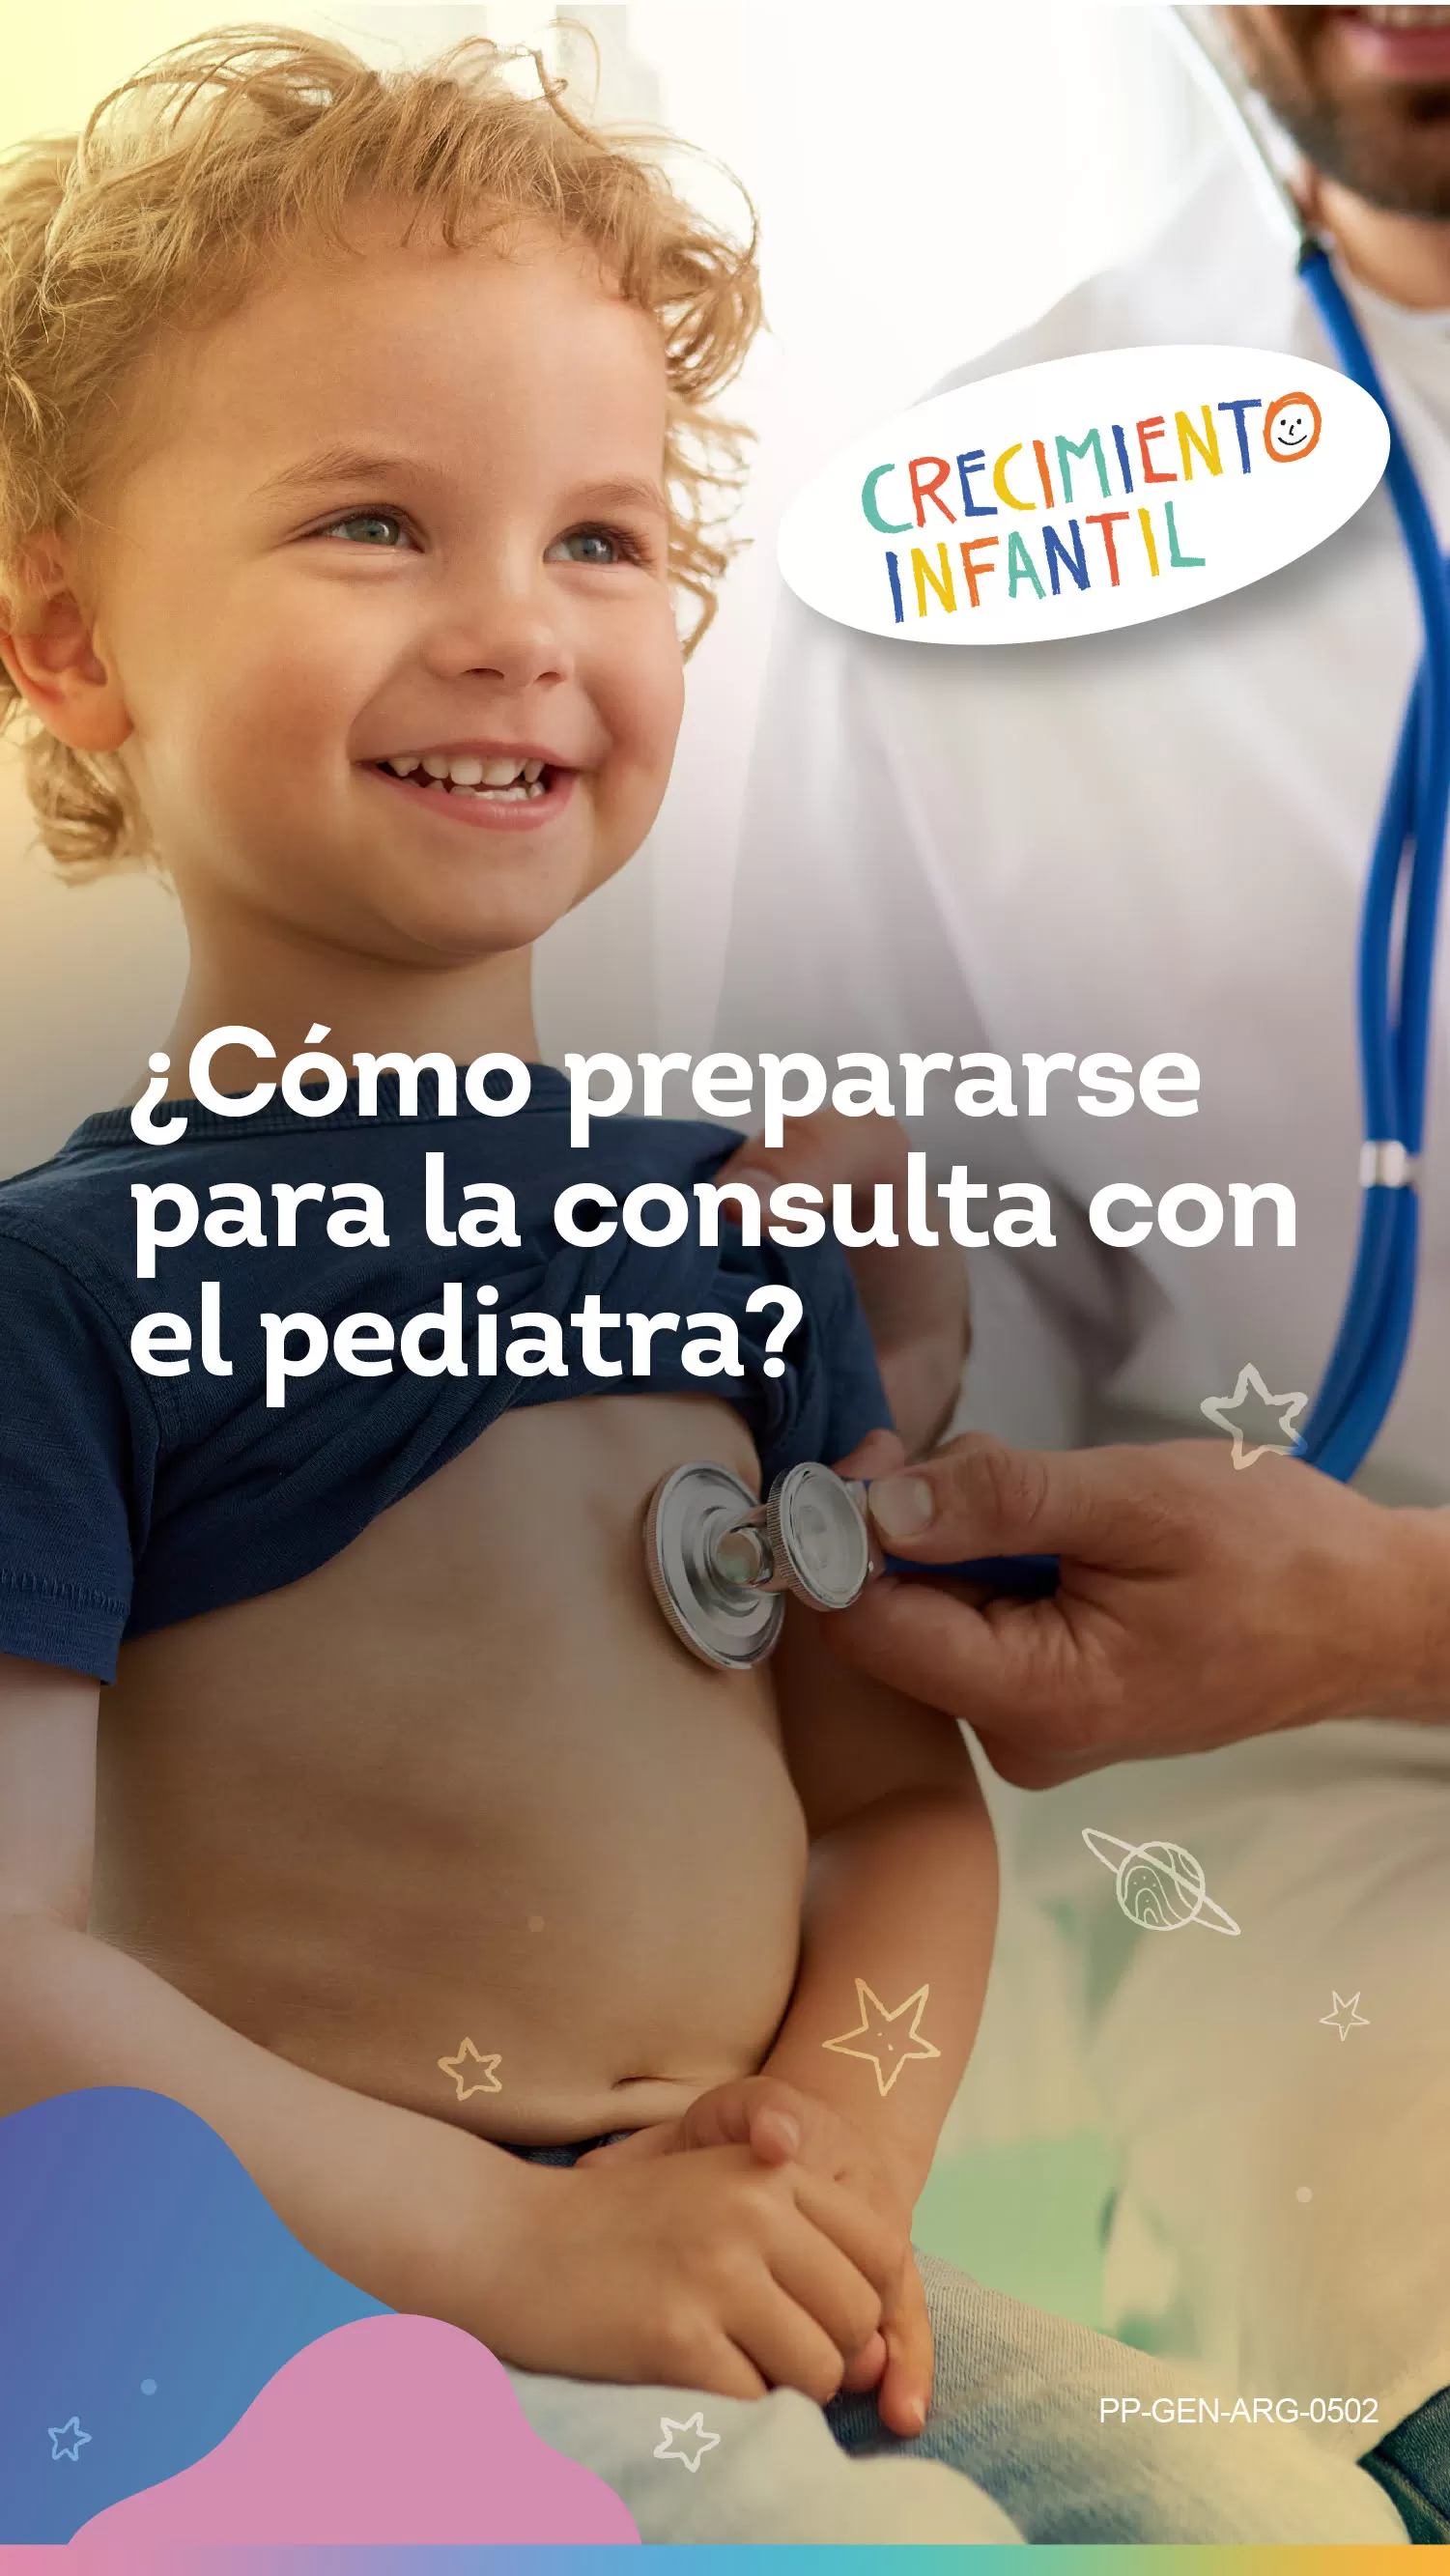 ¿Cómo prepararse para la consulta con el pediatra?